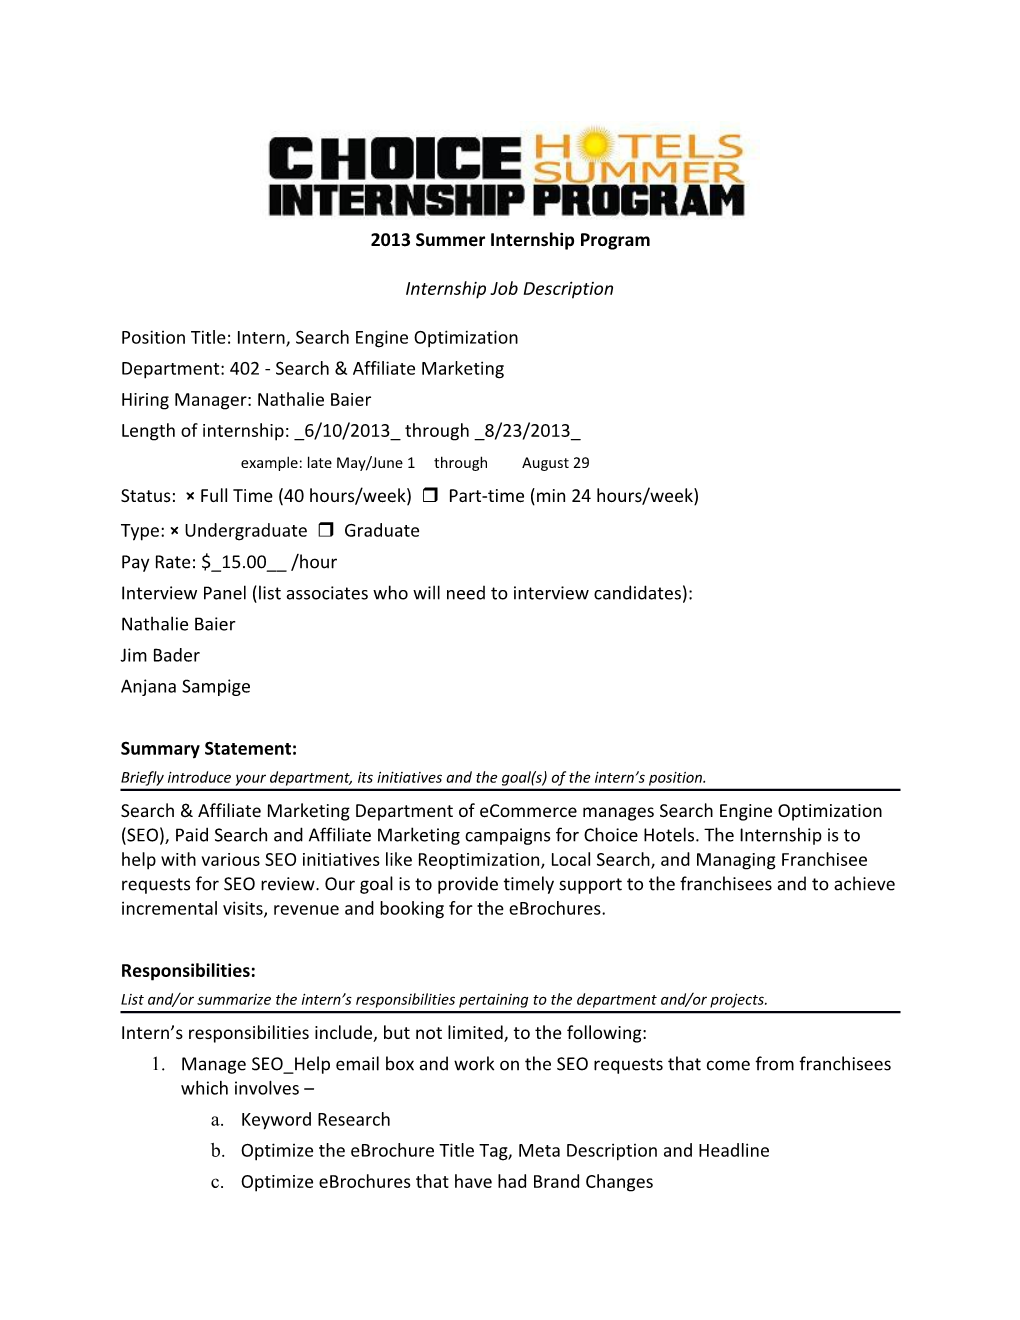 2008 Summer Internship Program